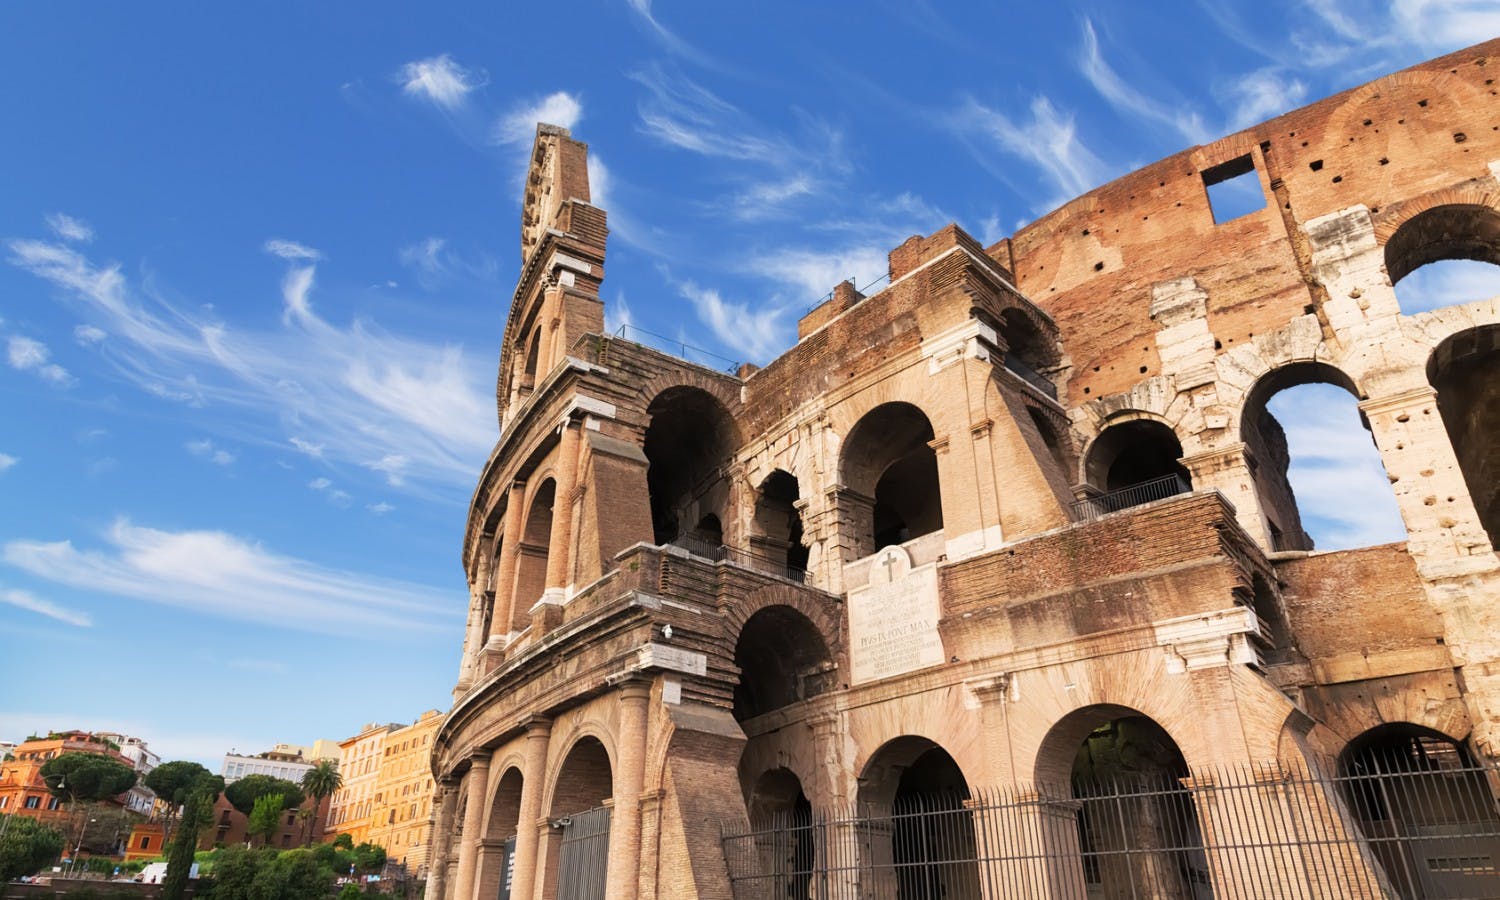 Rom på en dag med Colosseum, det antikke Rom og byens centrum eftermiddagdudflugt